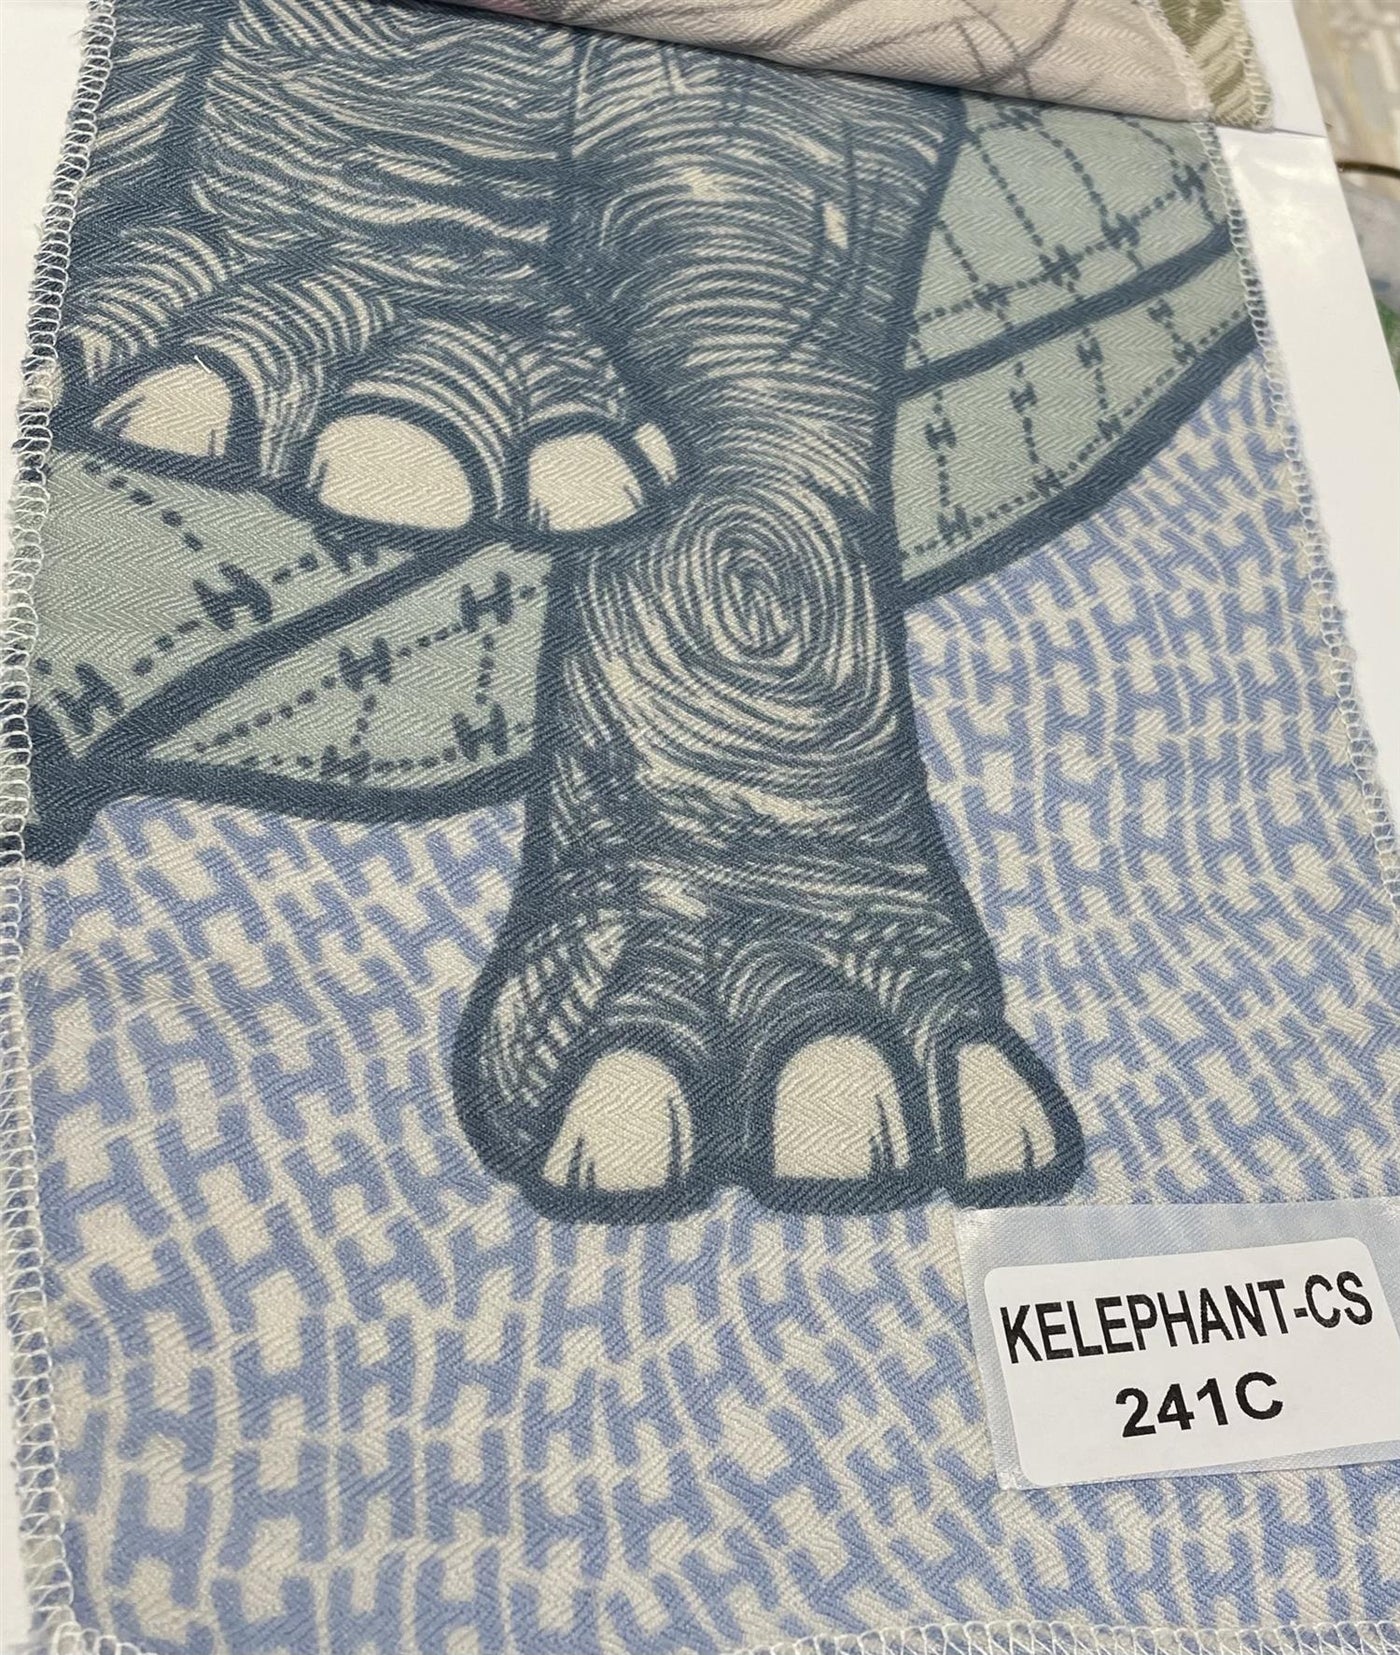 Kelephant-cs Scarf Elephant + H print